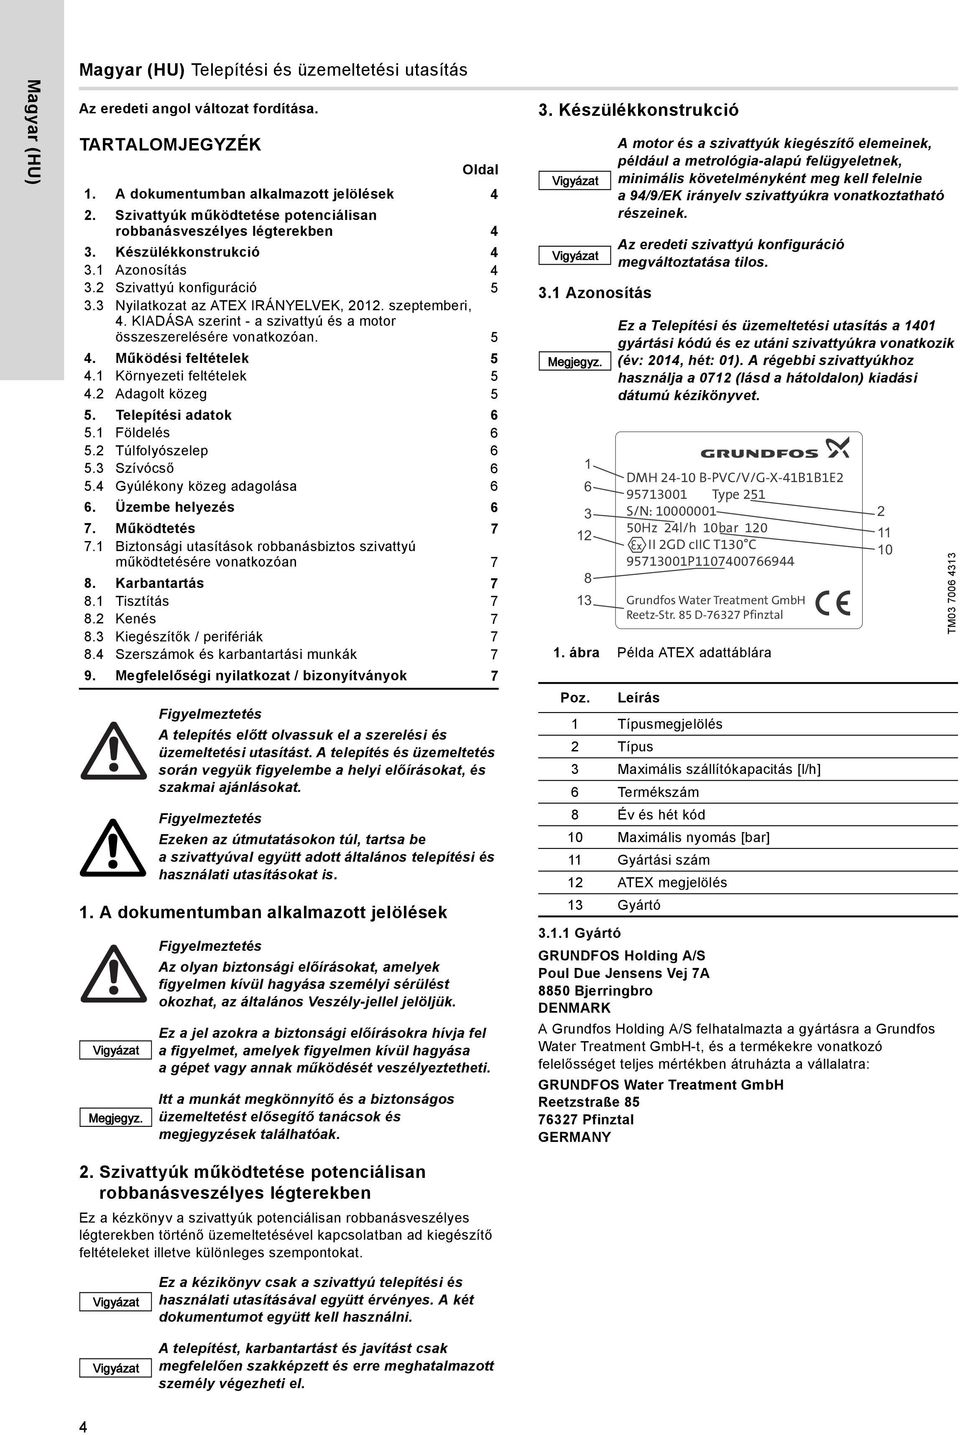 3 Nyilatkozat az ATEX IRÁNYELVEK, 2012. szeptemberi, 4. KIADÁSA szerint - a szivattyú és a motor összeszerelésére vonatkozóan. 5 4. Működési feltételek 5 4.1 Környezeti feltételek 5 4.